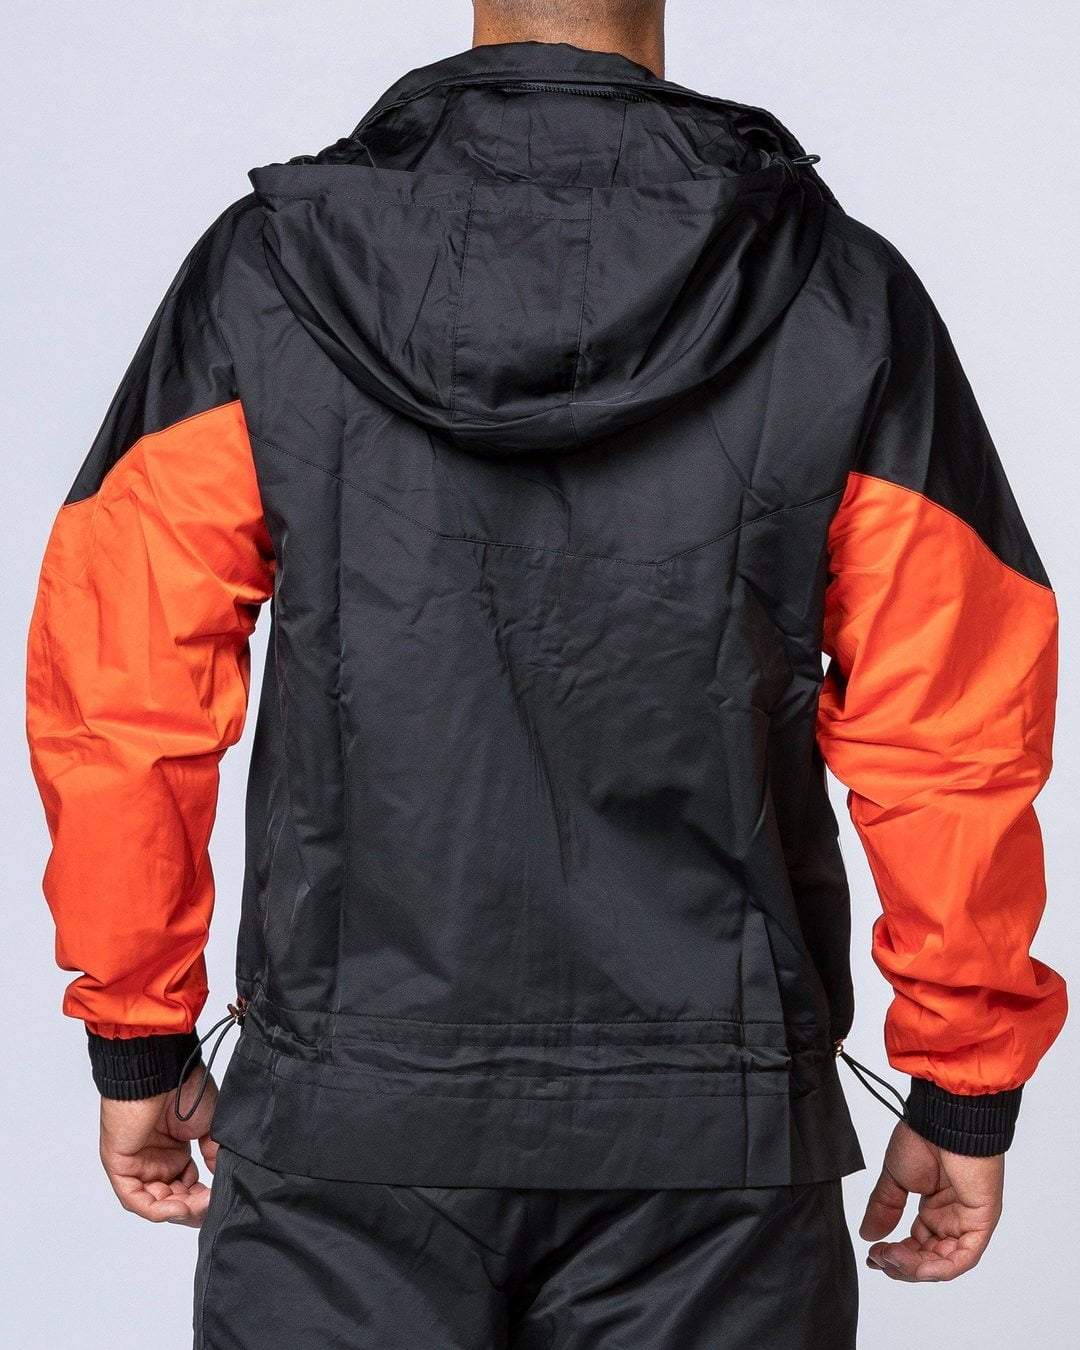 musclenation Unisex Retro Jacket - Black / Blood Orange